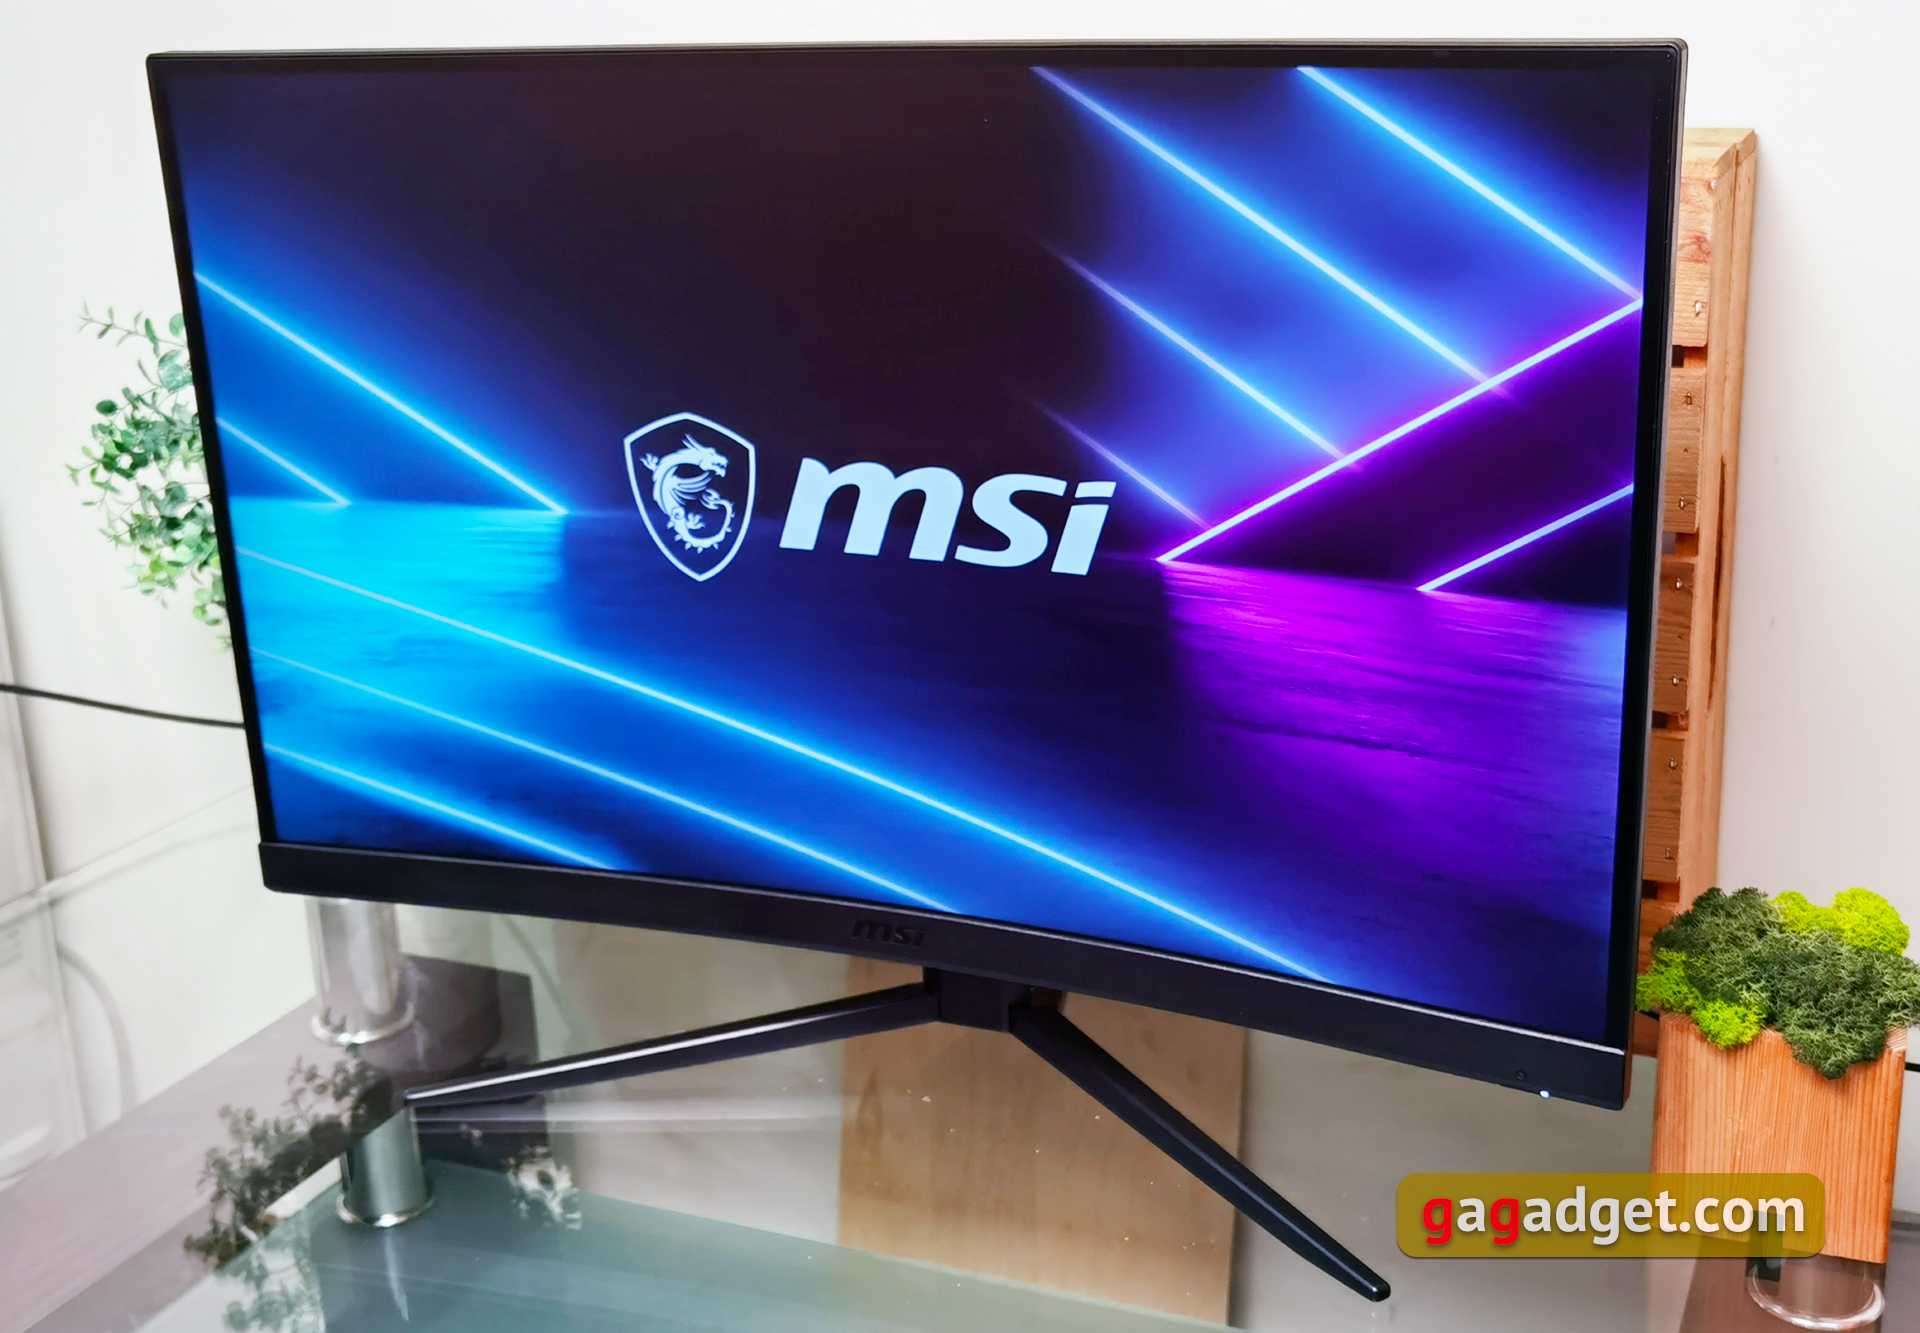 Panel curvo, 4K UHD y HDR Ready: este monitor MSI está en oferta y pocas  veces